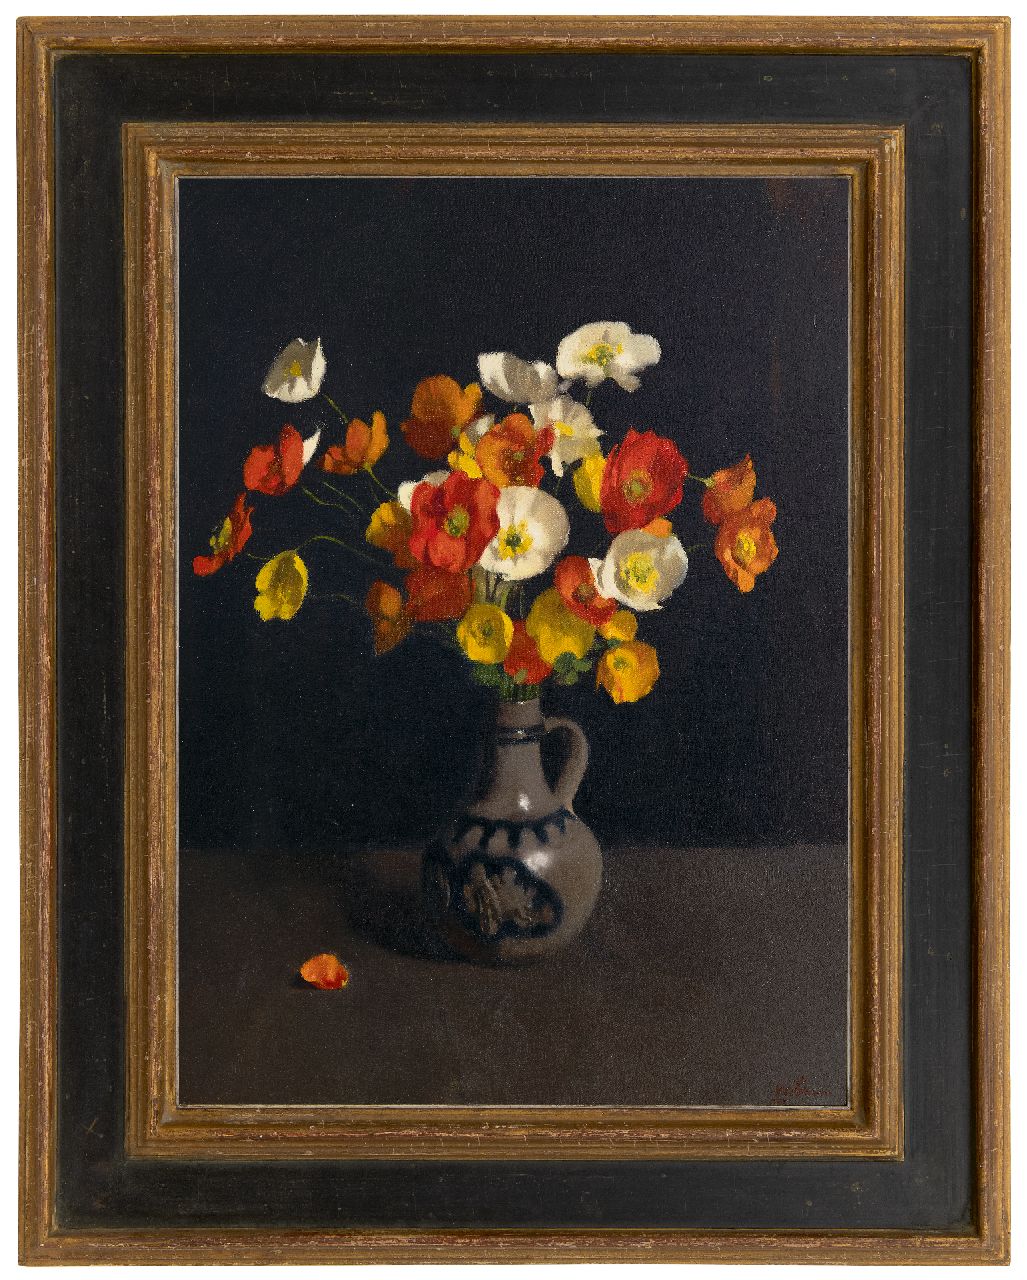 Witsen W.A.  | 'Willem' Arnold Witsen | Schilderijen te koop aangeboden | Klaprozen in een stenen kruik, olieverf op doek 62,4 x 45,8 cm, gesigneerd rechtsonder